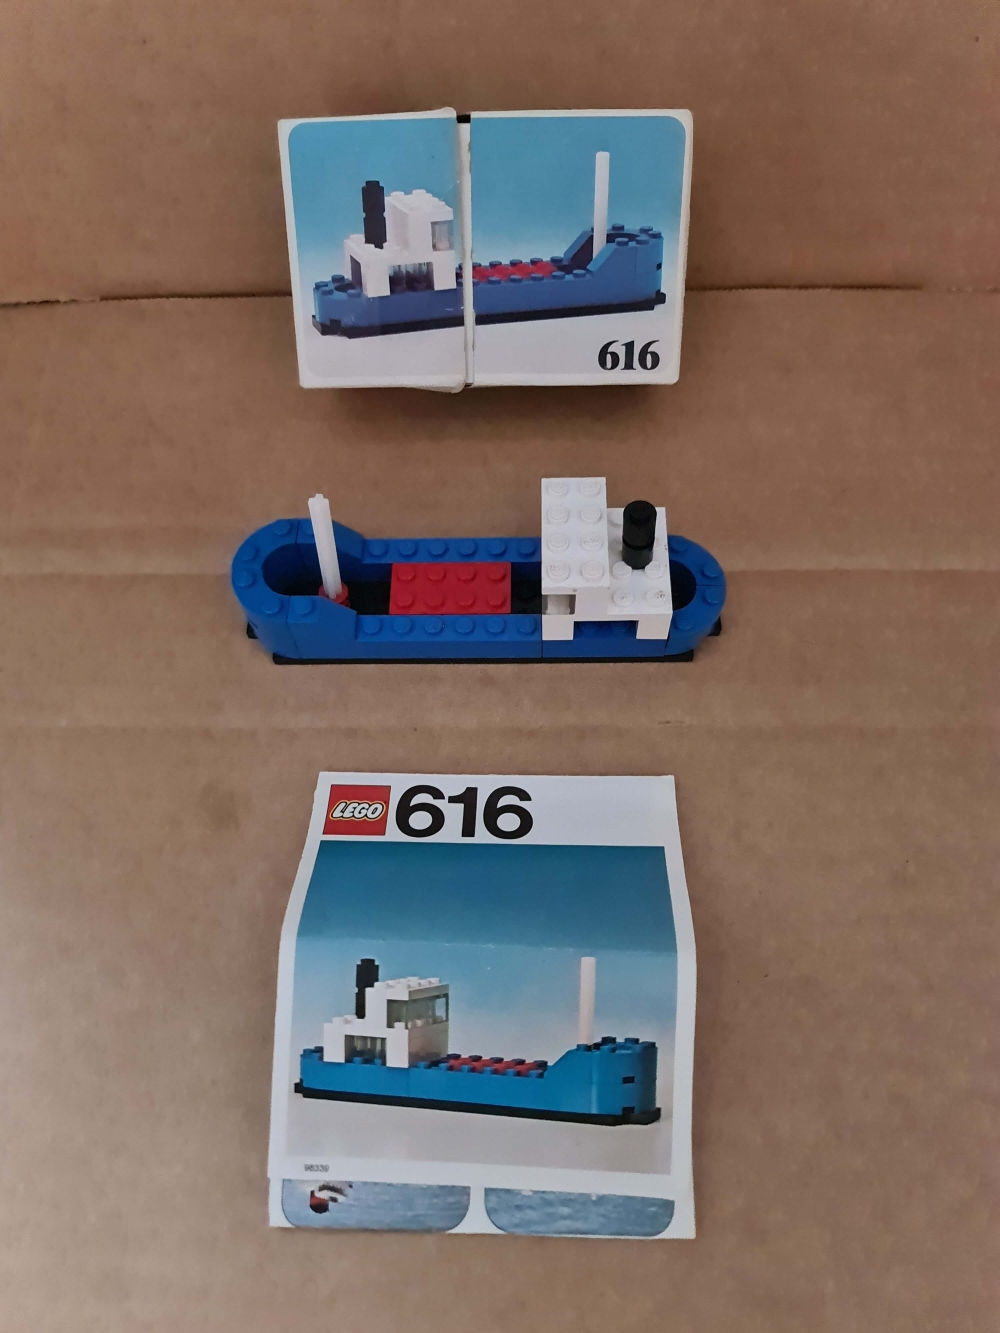 Sett 616 fra Lego Legoland serien.
Fint sett. Komplet med manual og eske.